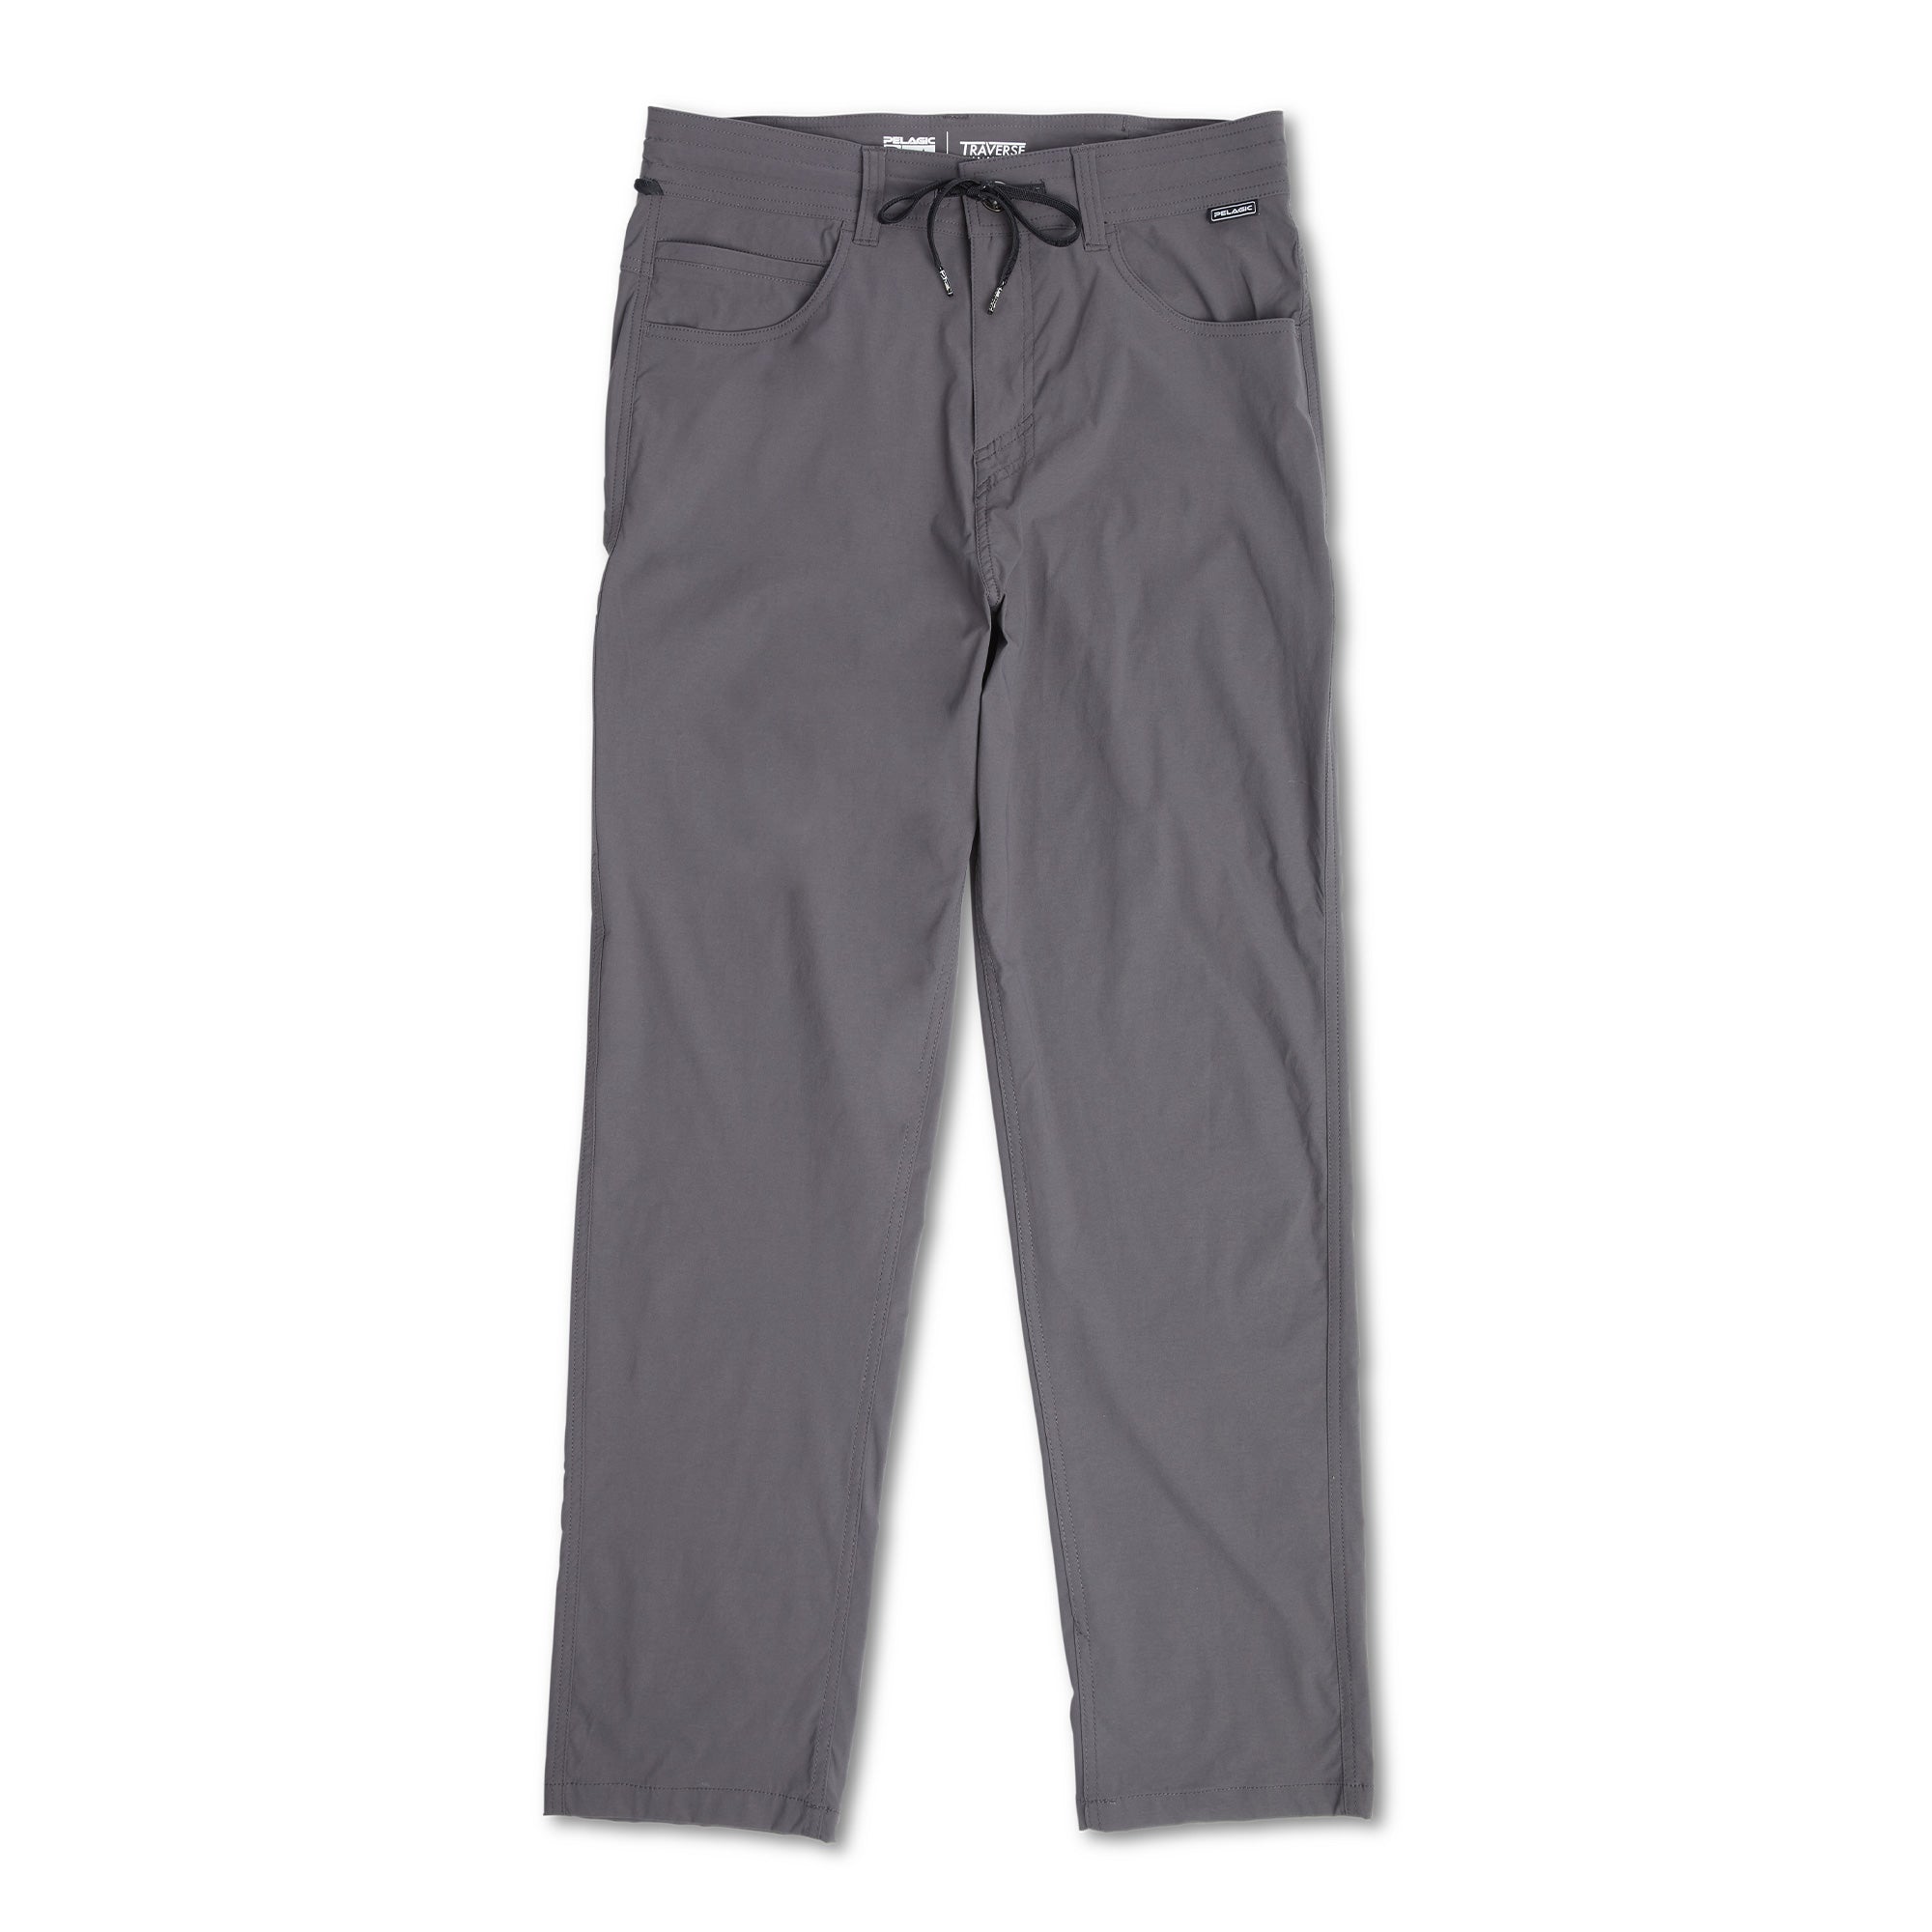 Velour Track Pants for Men – AWAKEN ART CLOTHING